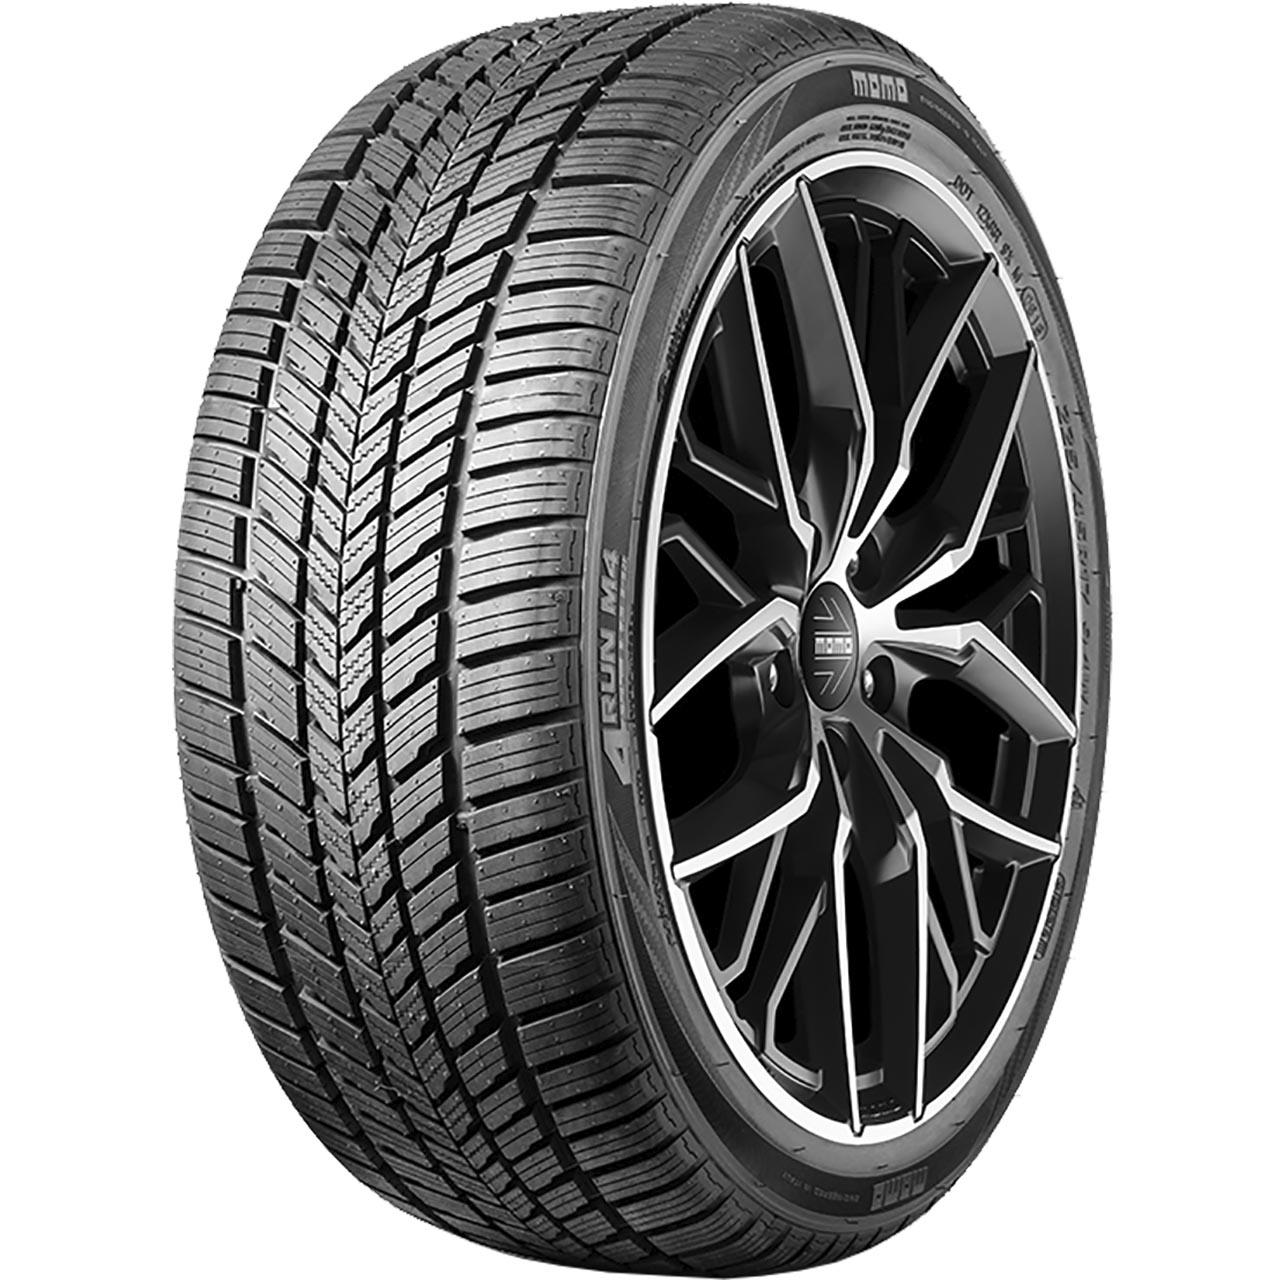 Momo Tire M 4 Four Season 195/45R16 84V XL